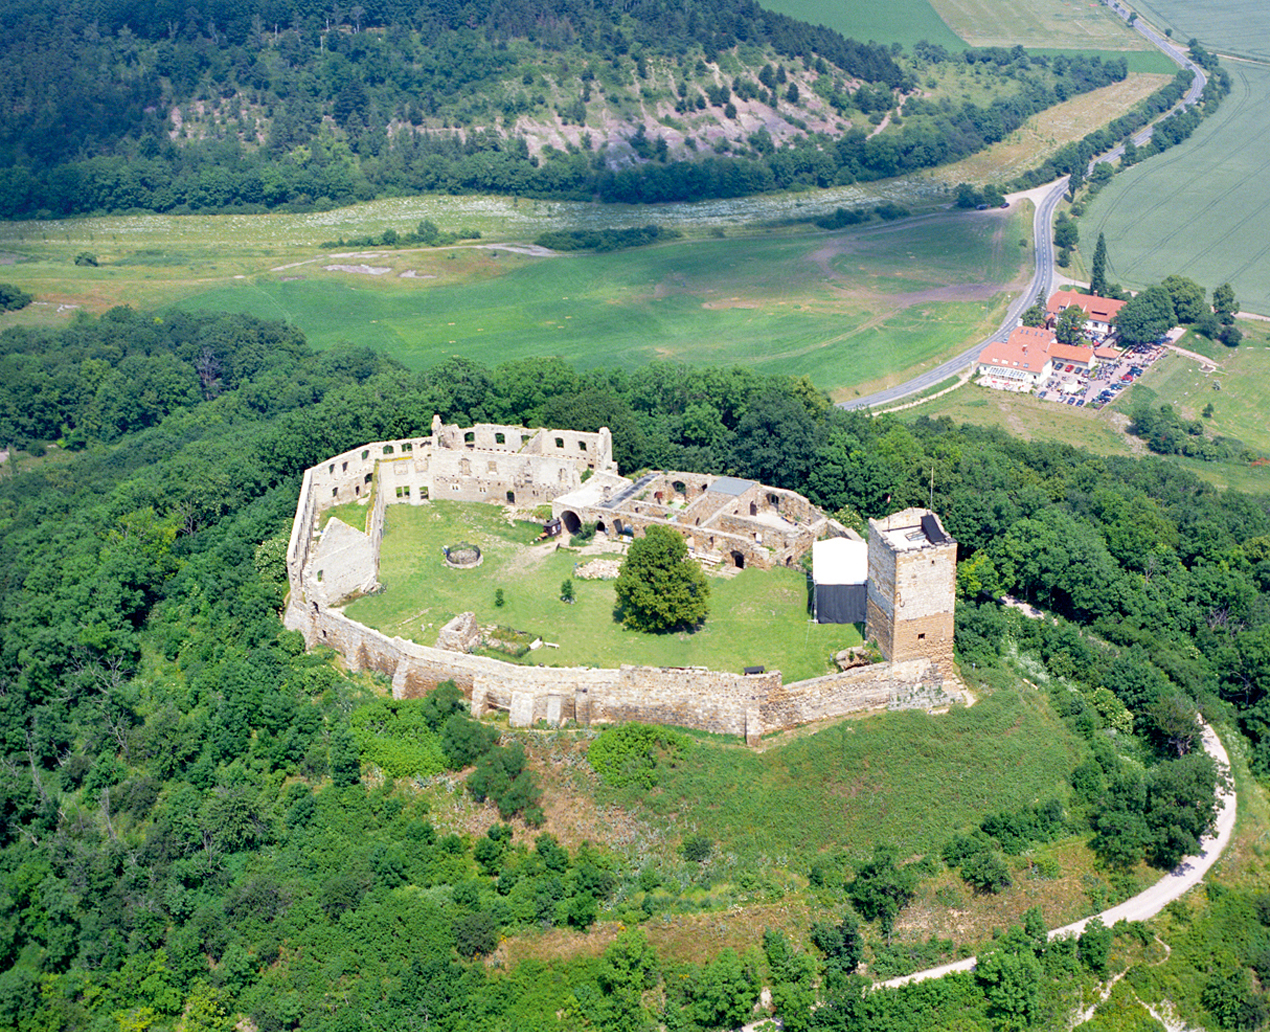 Drei Gleichen Burg Gleichen ©Archiv Tourismusverband L.Ebhardt